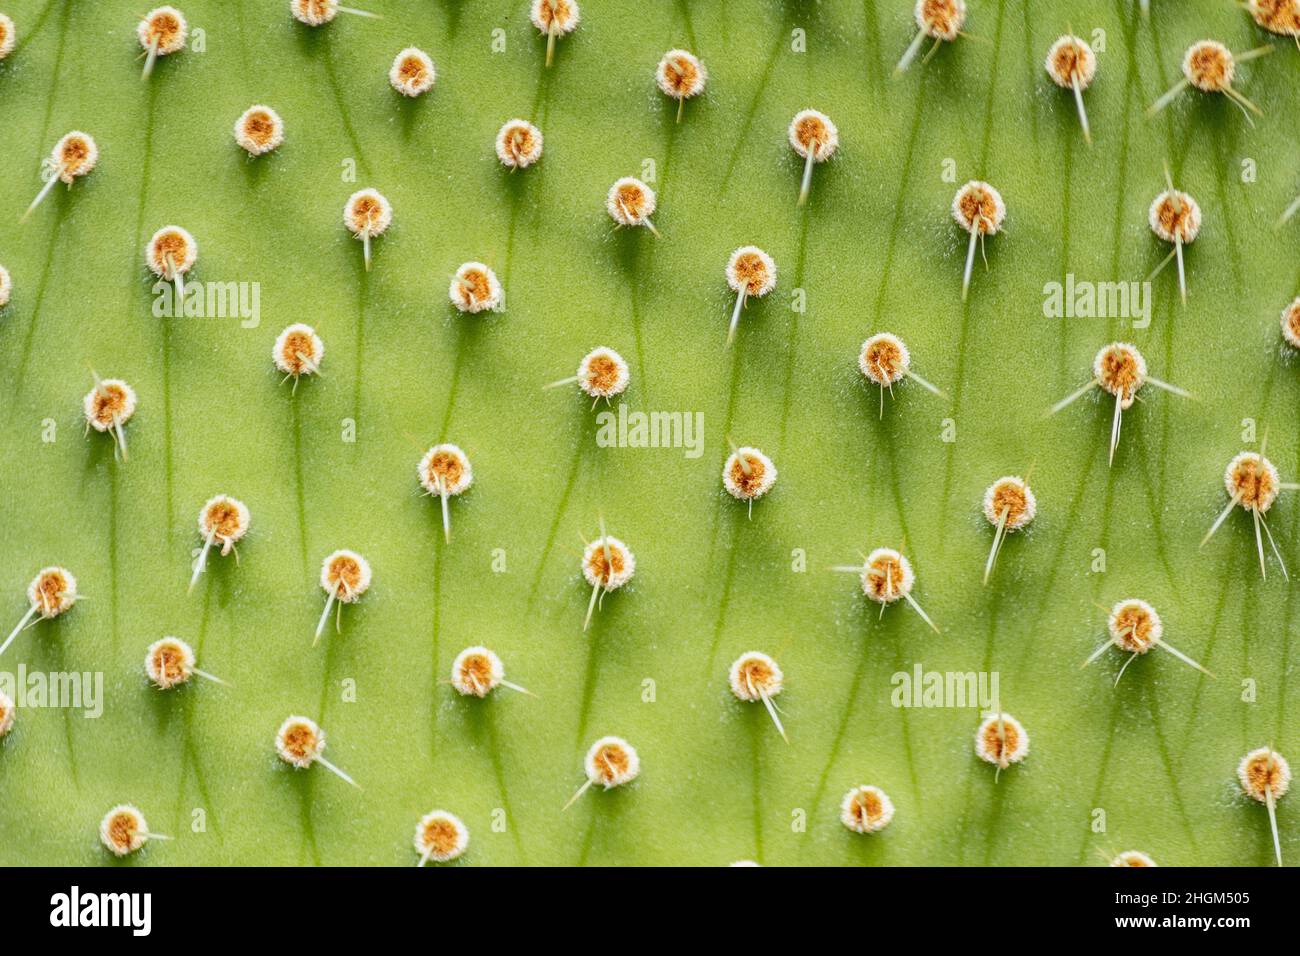 Wildwuchs allgemein als Kaktus Kaktus Kaktus Kaktus Kaktus genannt, Art Opuntia, close up Hintergrund. Sie breitet sich in große Kolonien aus und wird als Inva angesehen Stockfoto